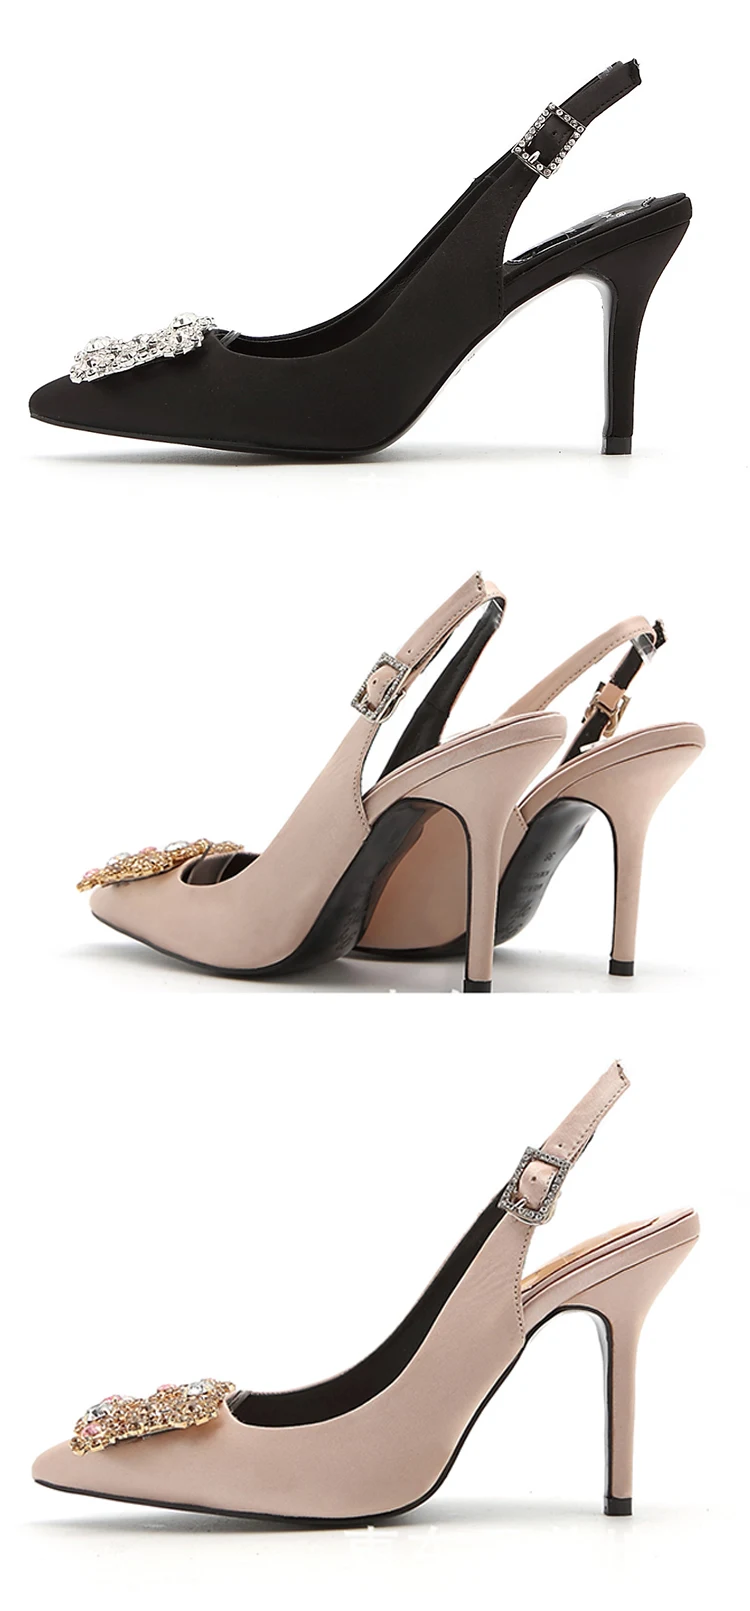 WEIQIAONA Новинка весны женские туфли-лодочки на высоком каблуке элегантная обувь с пряжкой и стразы свадебные туфли с острым носком, брендовые дизайнерские сандалии